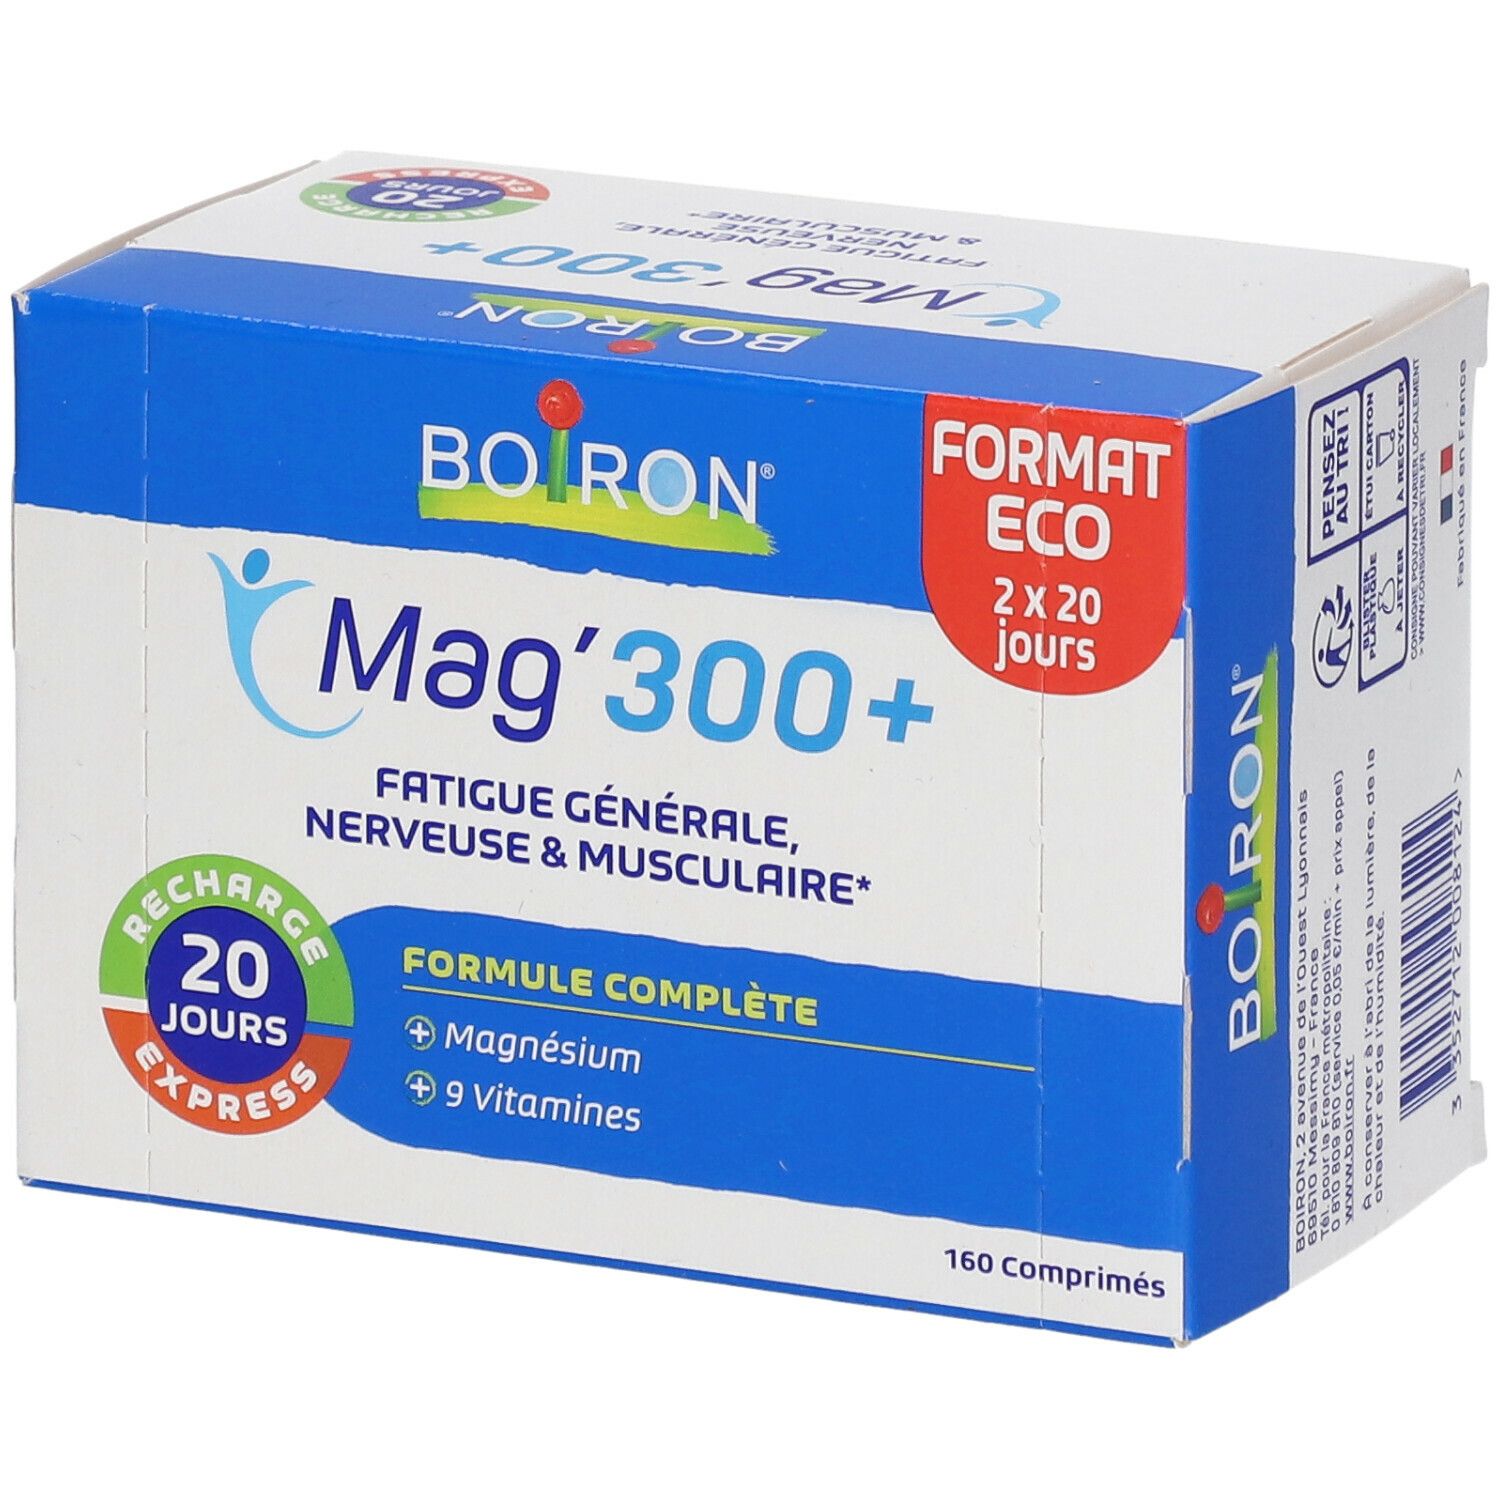 Boiron Mag'300+